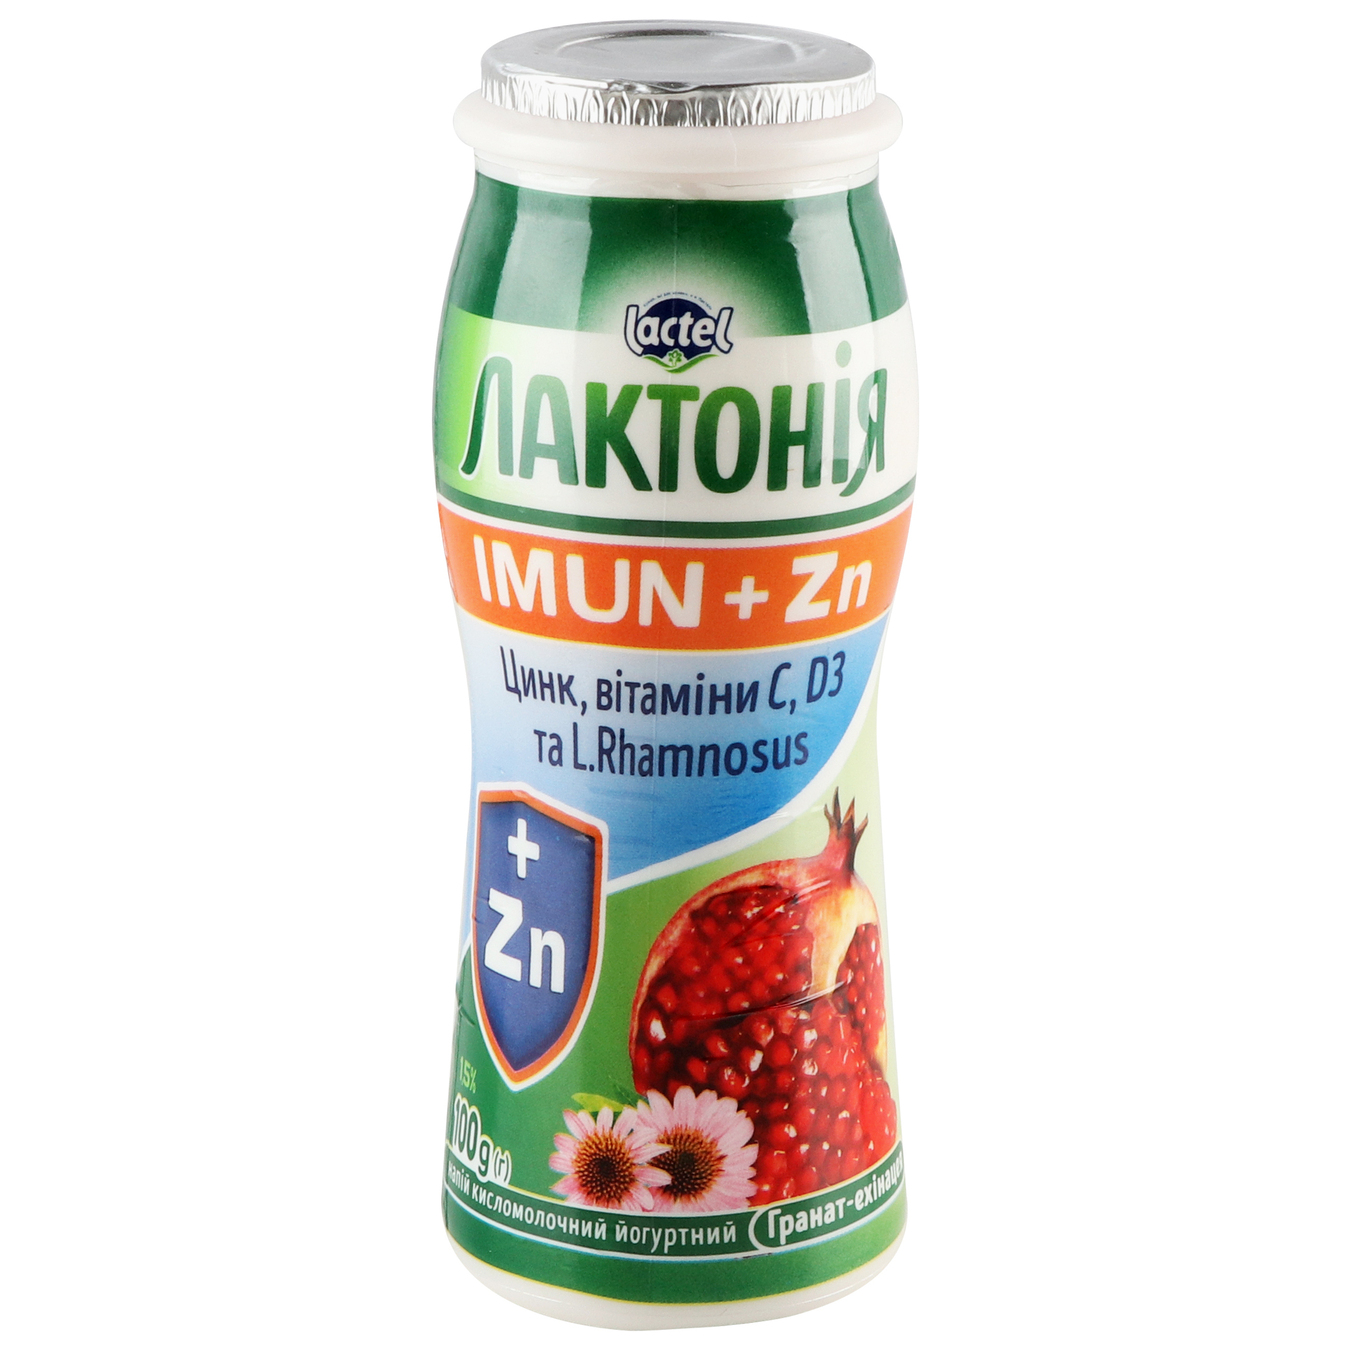 Напиток Лактония кисломолочный йогуртный Иммун+ гранат-эхинацея 1,5% 100г бутылка 5